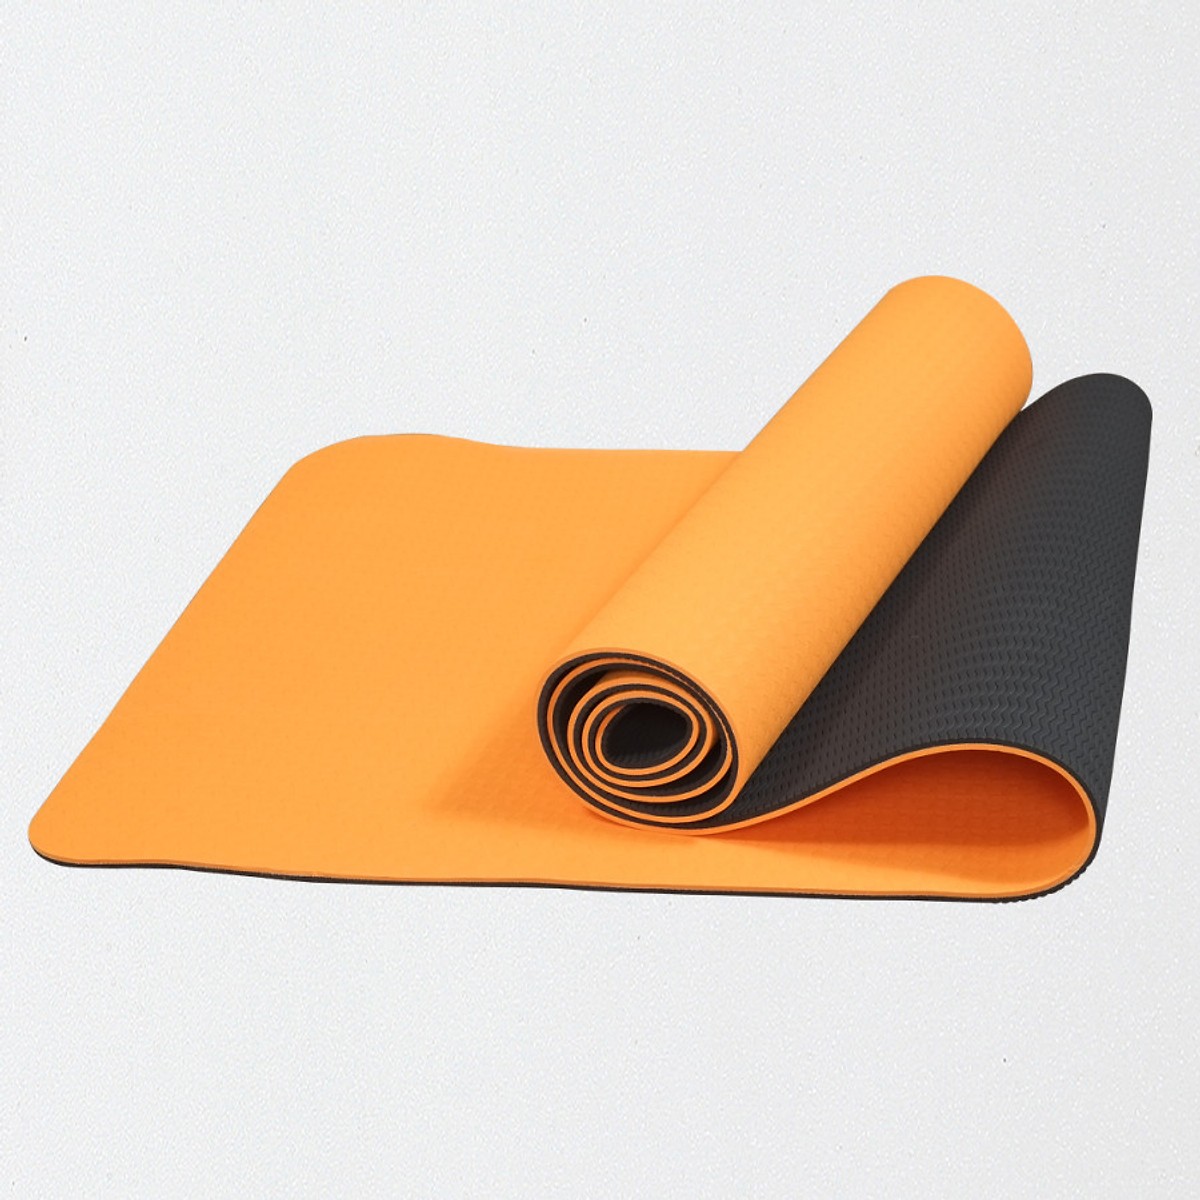 Thảm Yoga cao cấp 2 lớp 8mm dày dặn chống trượt - kèm túi đựng